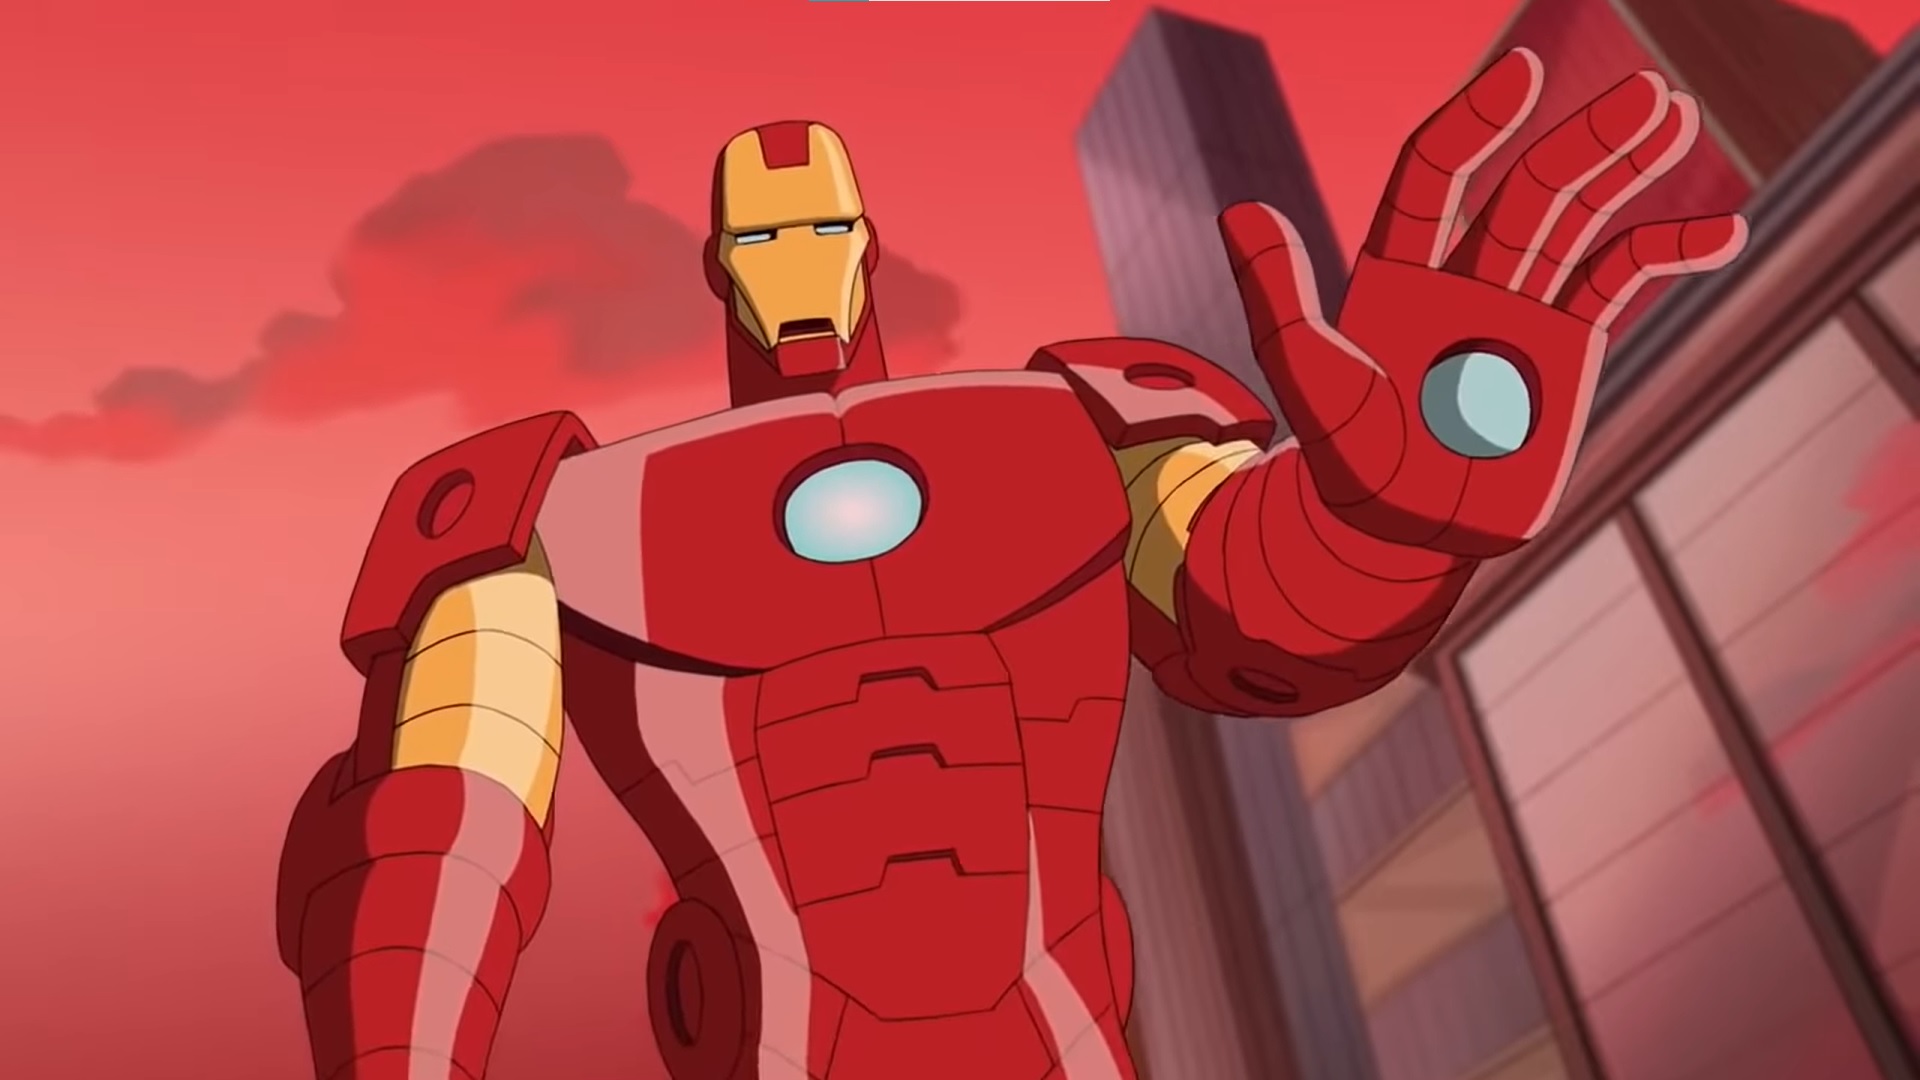 Marvel - I Am Iron Man Coffee Mug – Epic Stuff